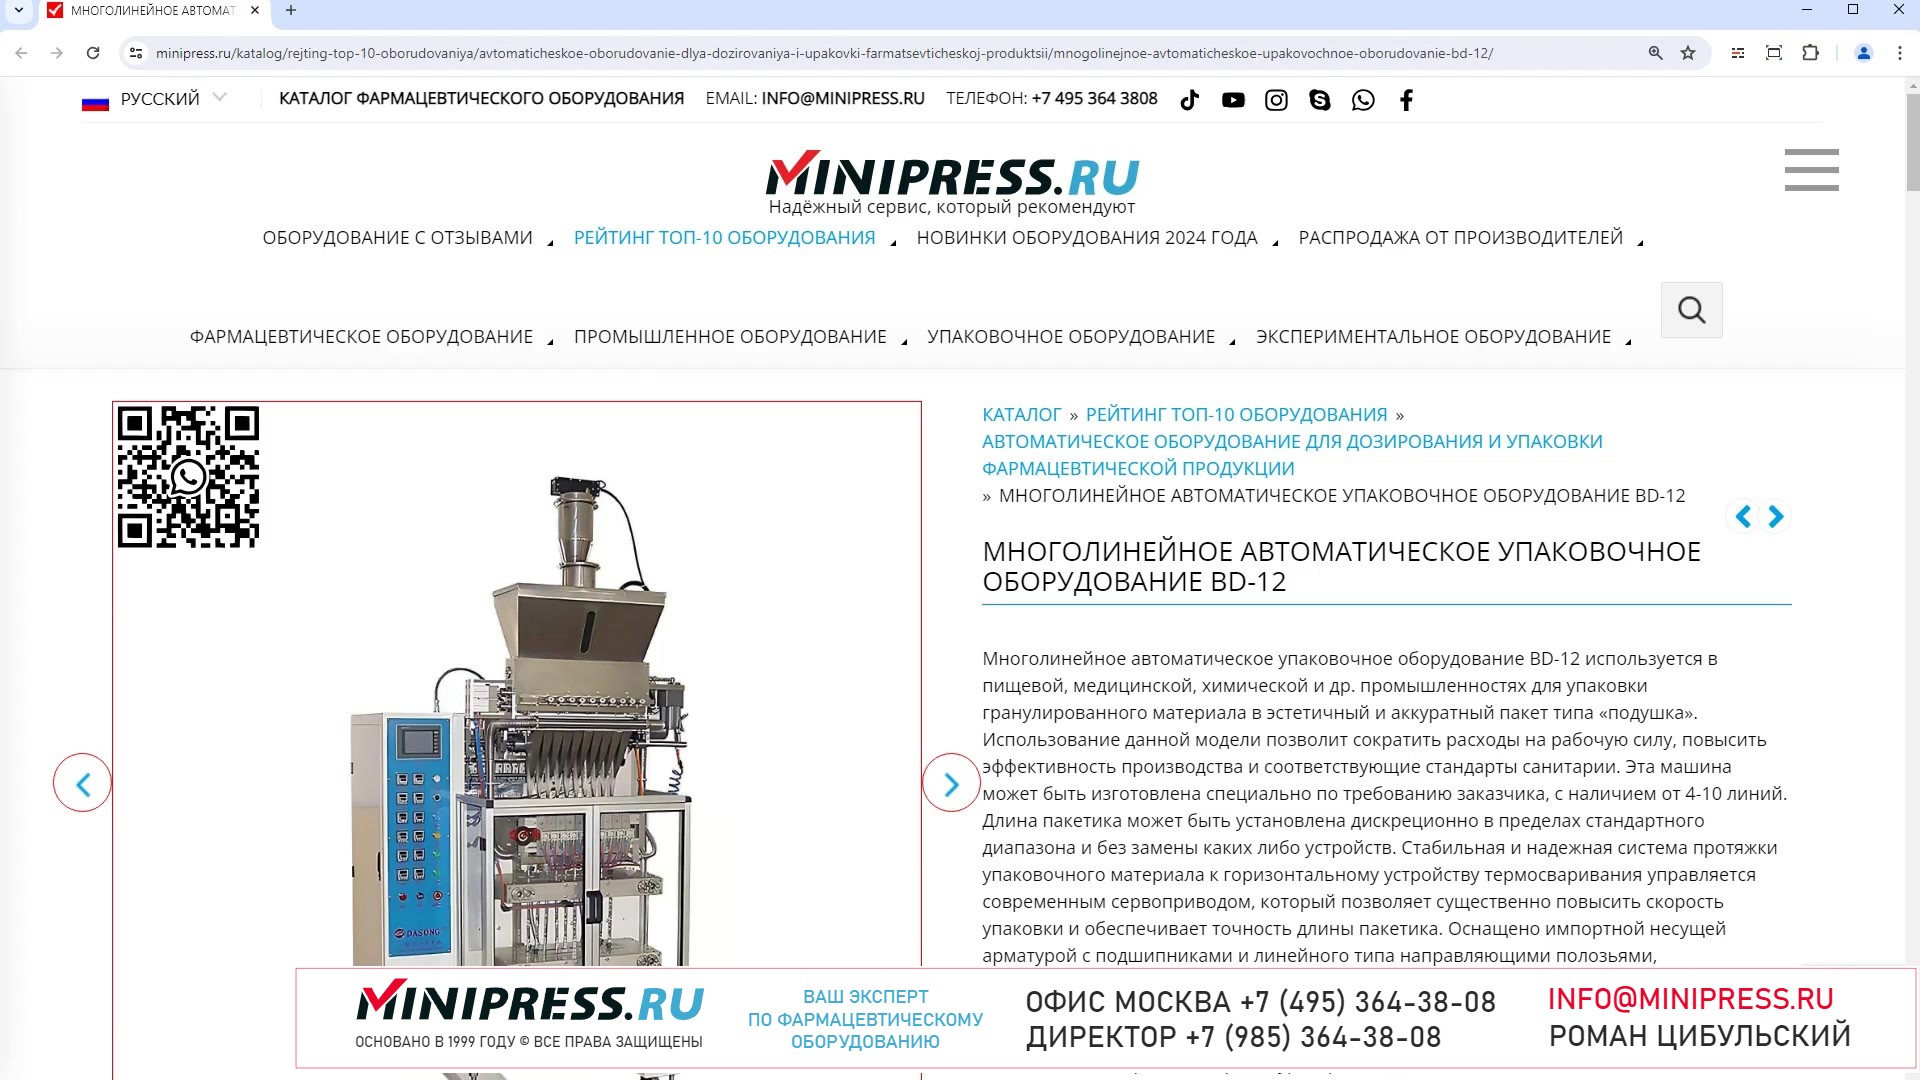 Minipress.ru Многолинейное автоматическое упаковочное оборудование BD-12